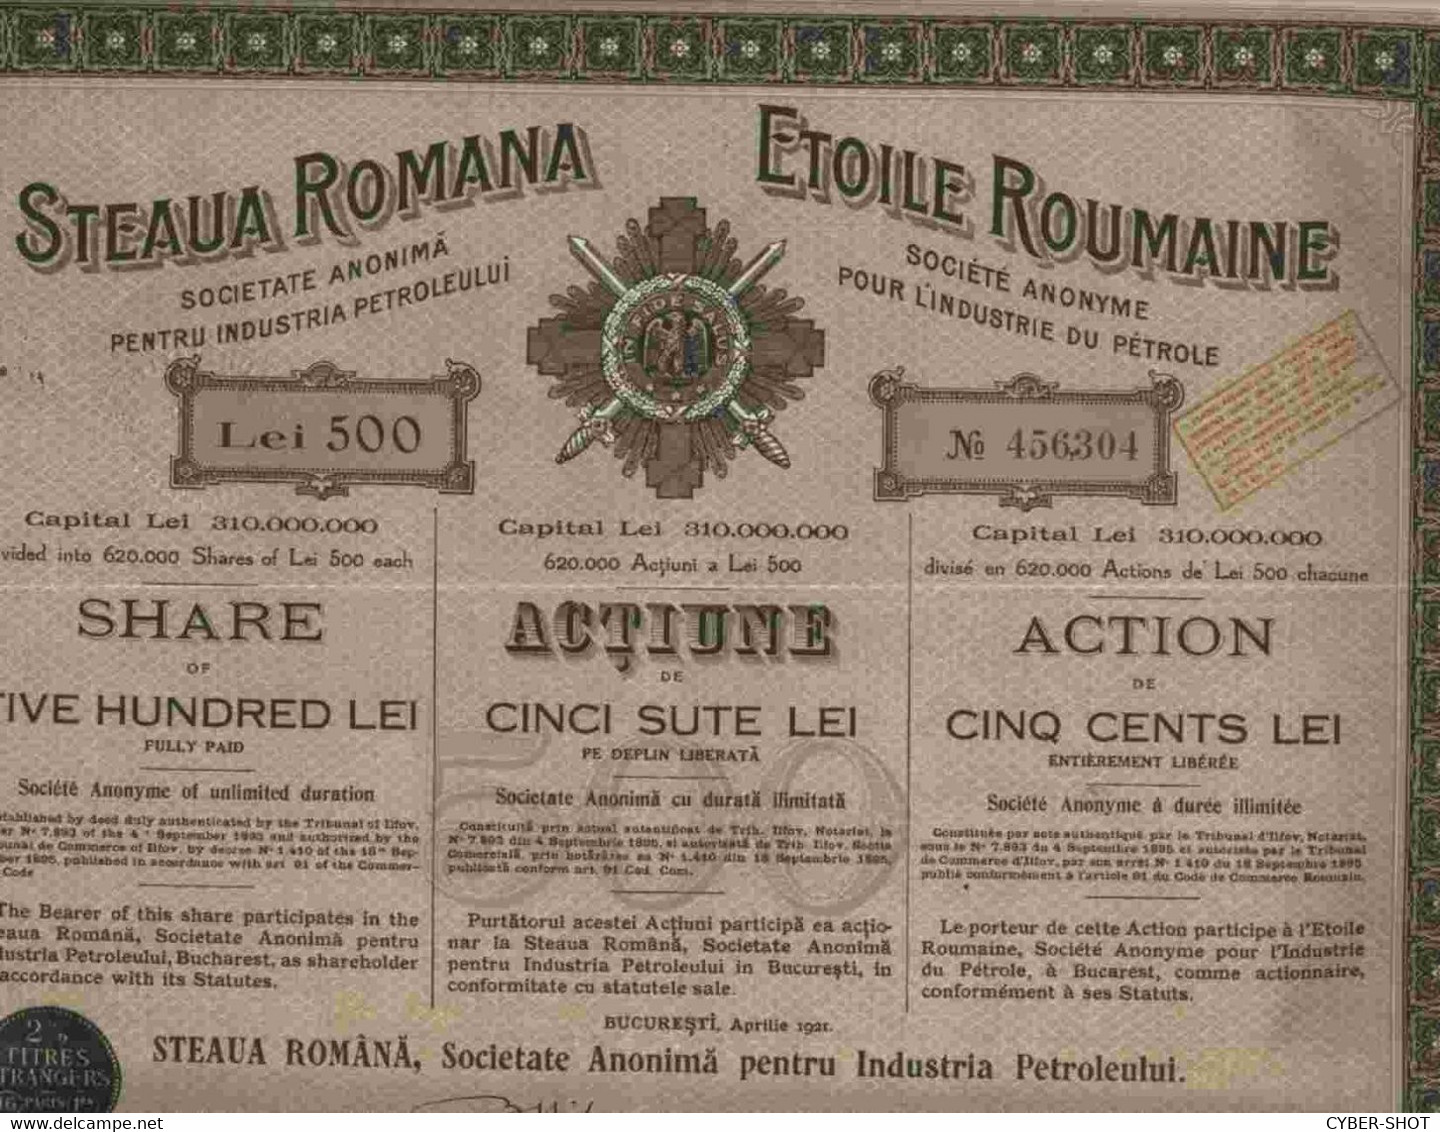 LOT OF 46 X : STEAUA ROMANA - SOC. ANON. PENTRU INDUSTRIA PERTOLEULUI 1921 & 1923 & 1924 - Oil